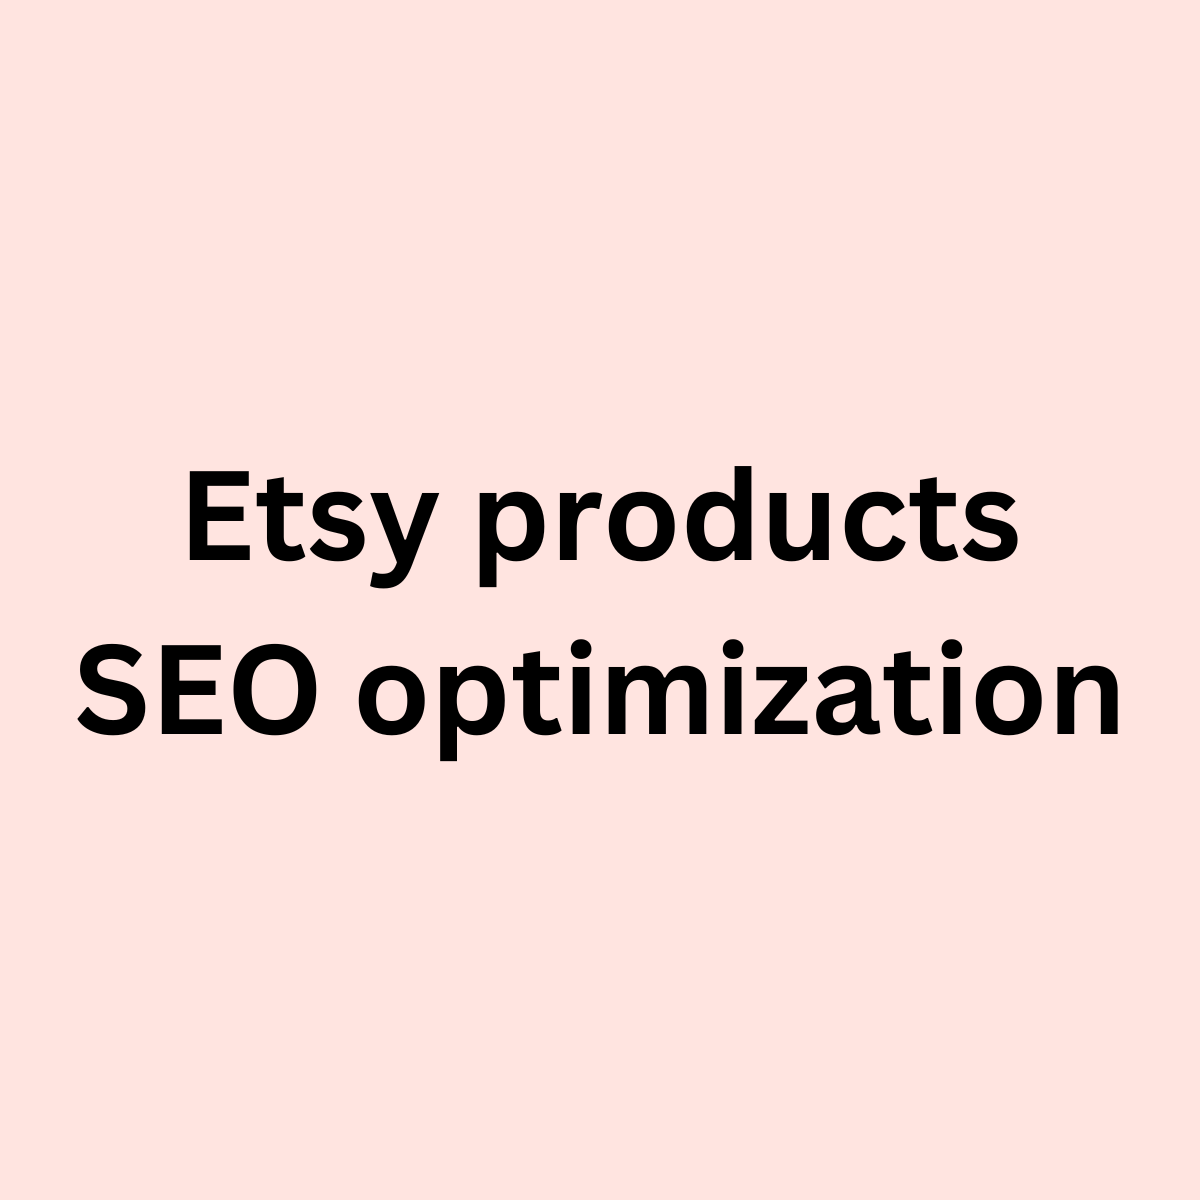 Etsy product SEO optimization